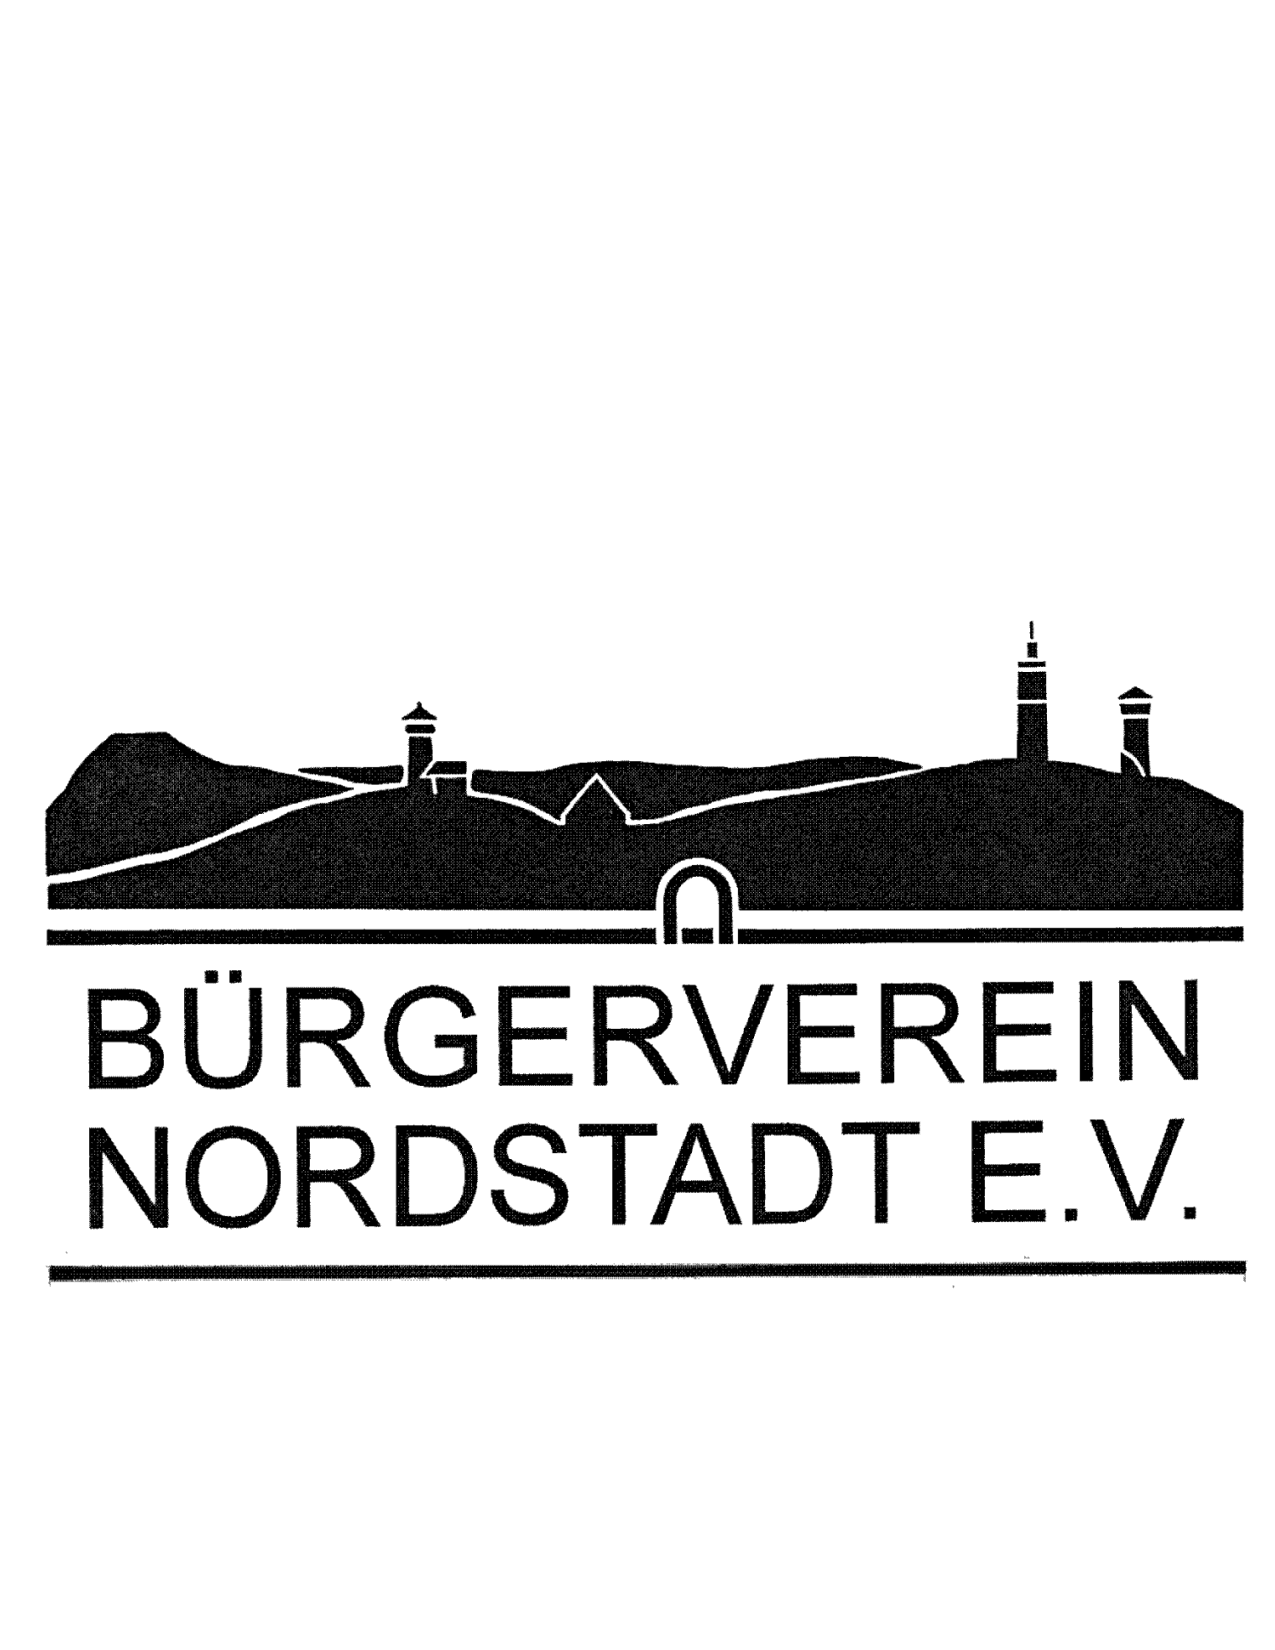 Bild zeigt das Logo des Bürgervereins